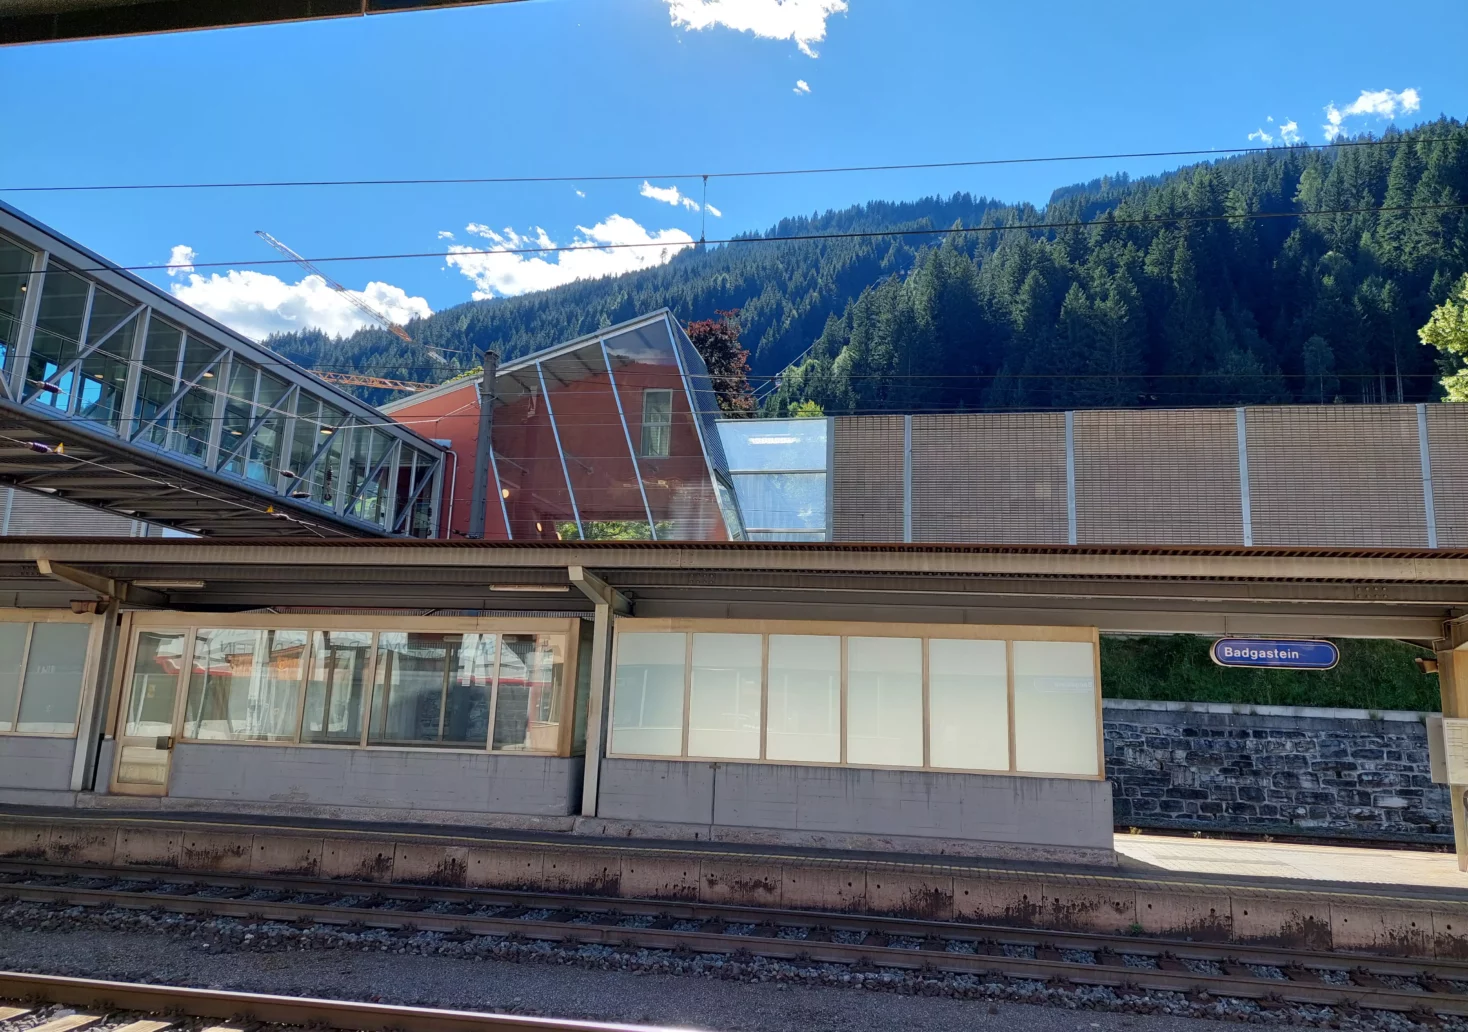 Bild auf 5.min.at zeigt den Bahnhof Gastein in Salzburg.